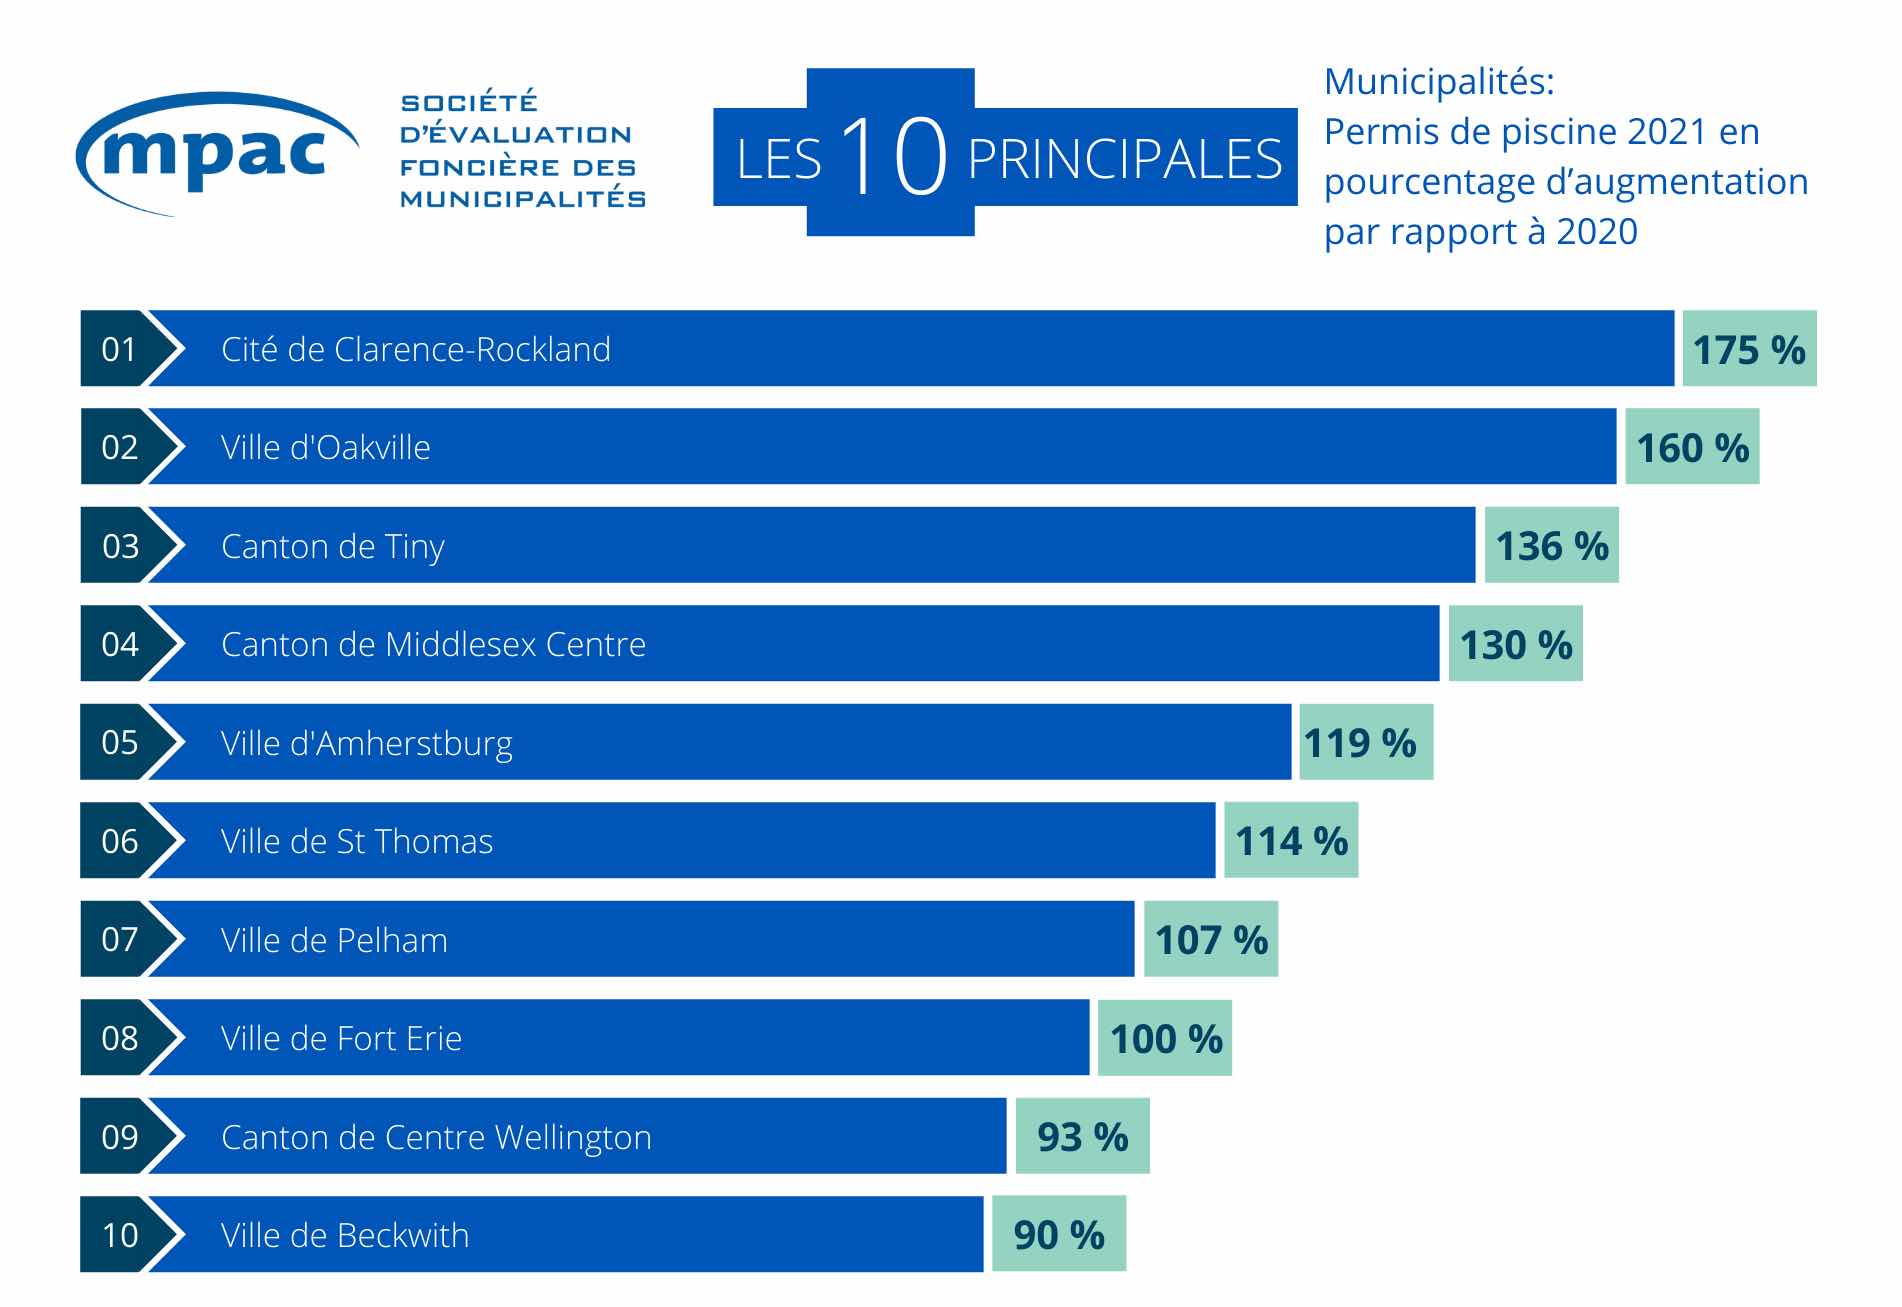 Les 10 principales municipalités : Permis de piscine 2021 par pourcentage d’augmentation par rapport à 2020